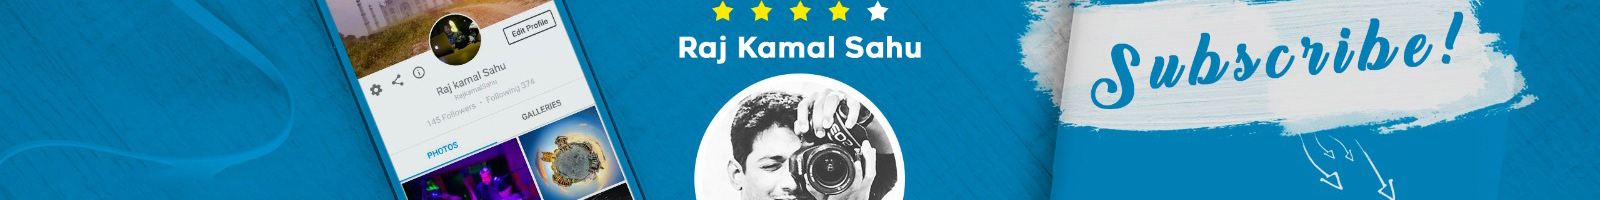 Raj Kamal Sahu のプロファイルバナー